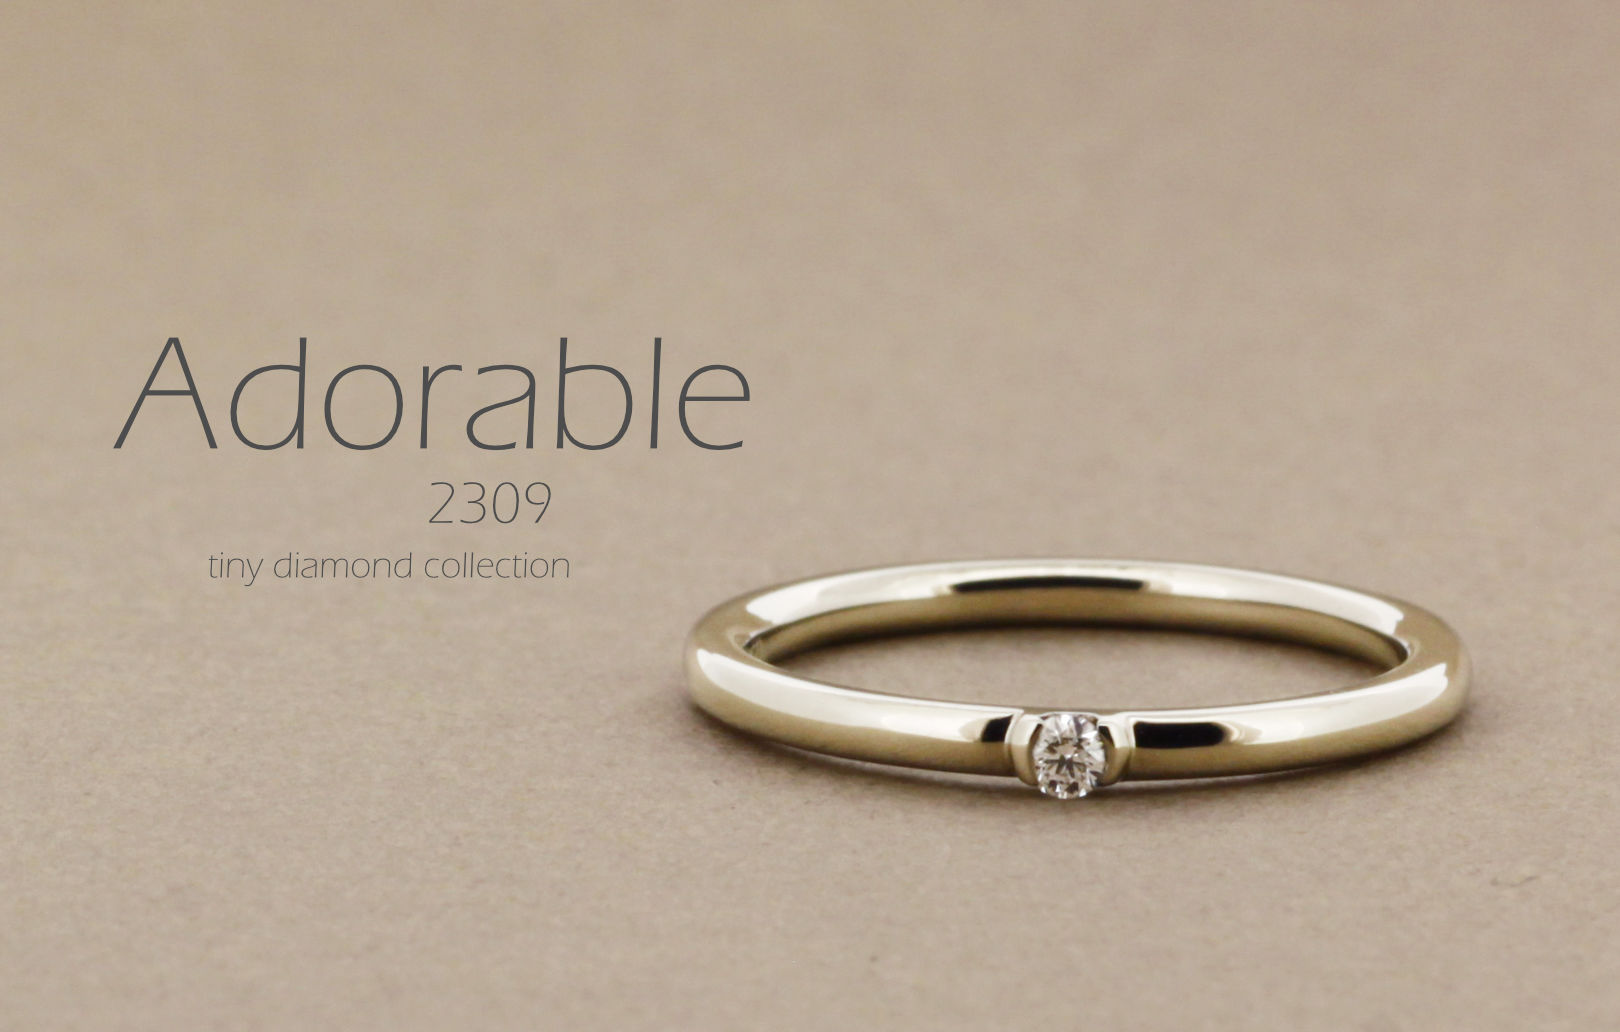 「Adorable」という名前が付いた、シンプルで細い丸みのあるアームに小さなダイヤモンドを1粒留めた指輪の詳細ページ